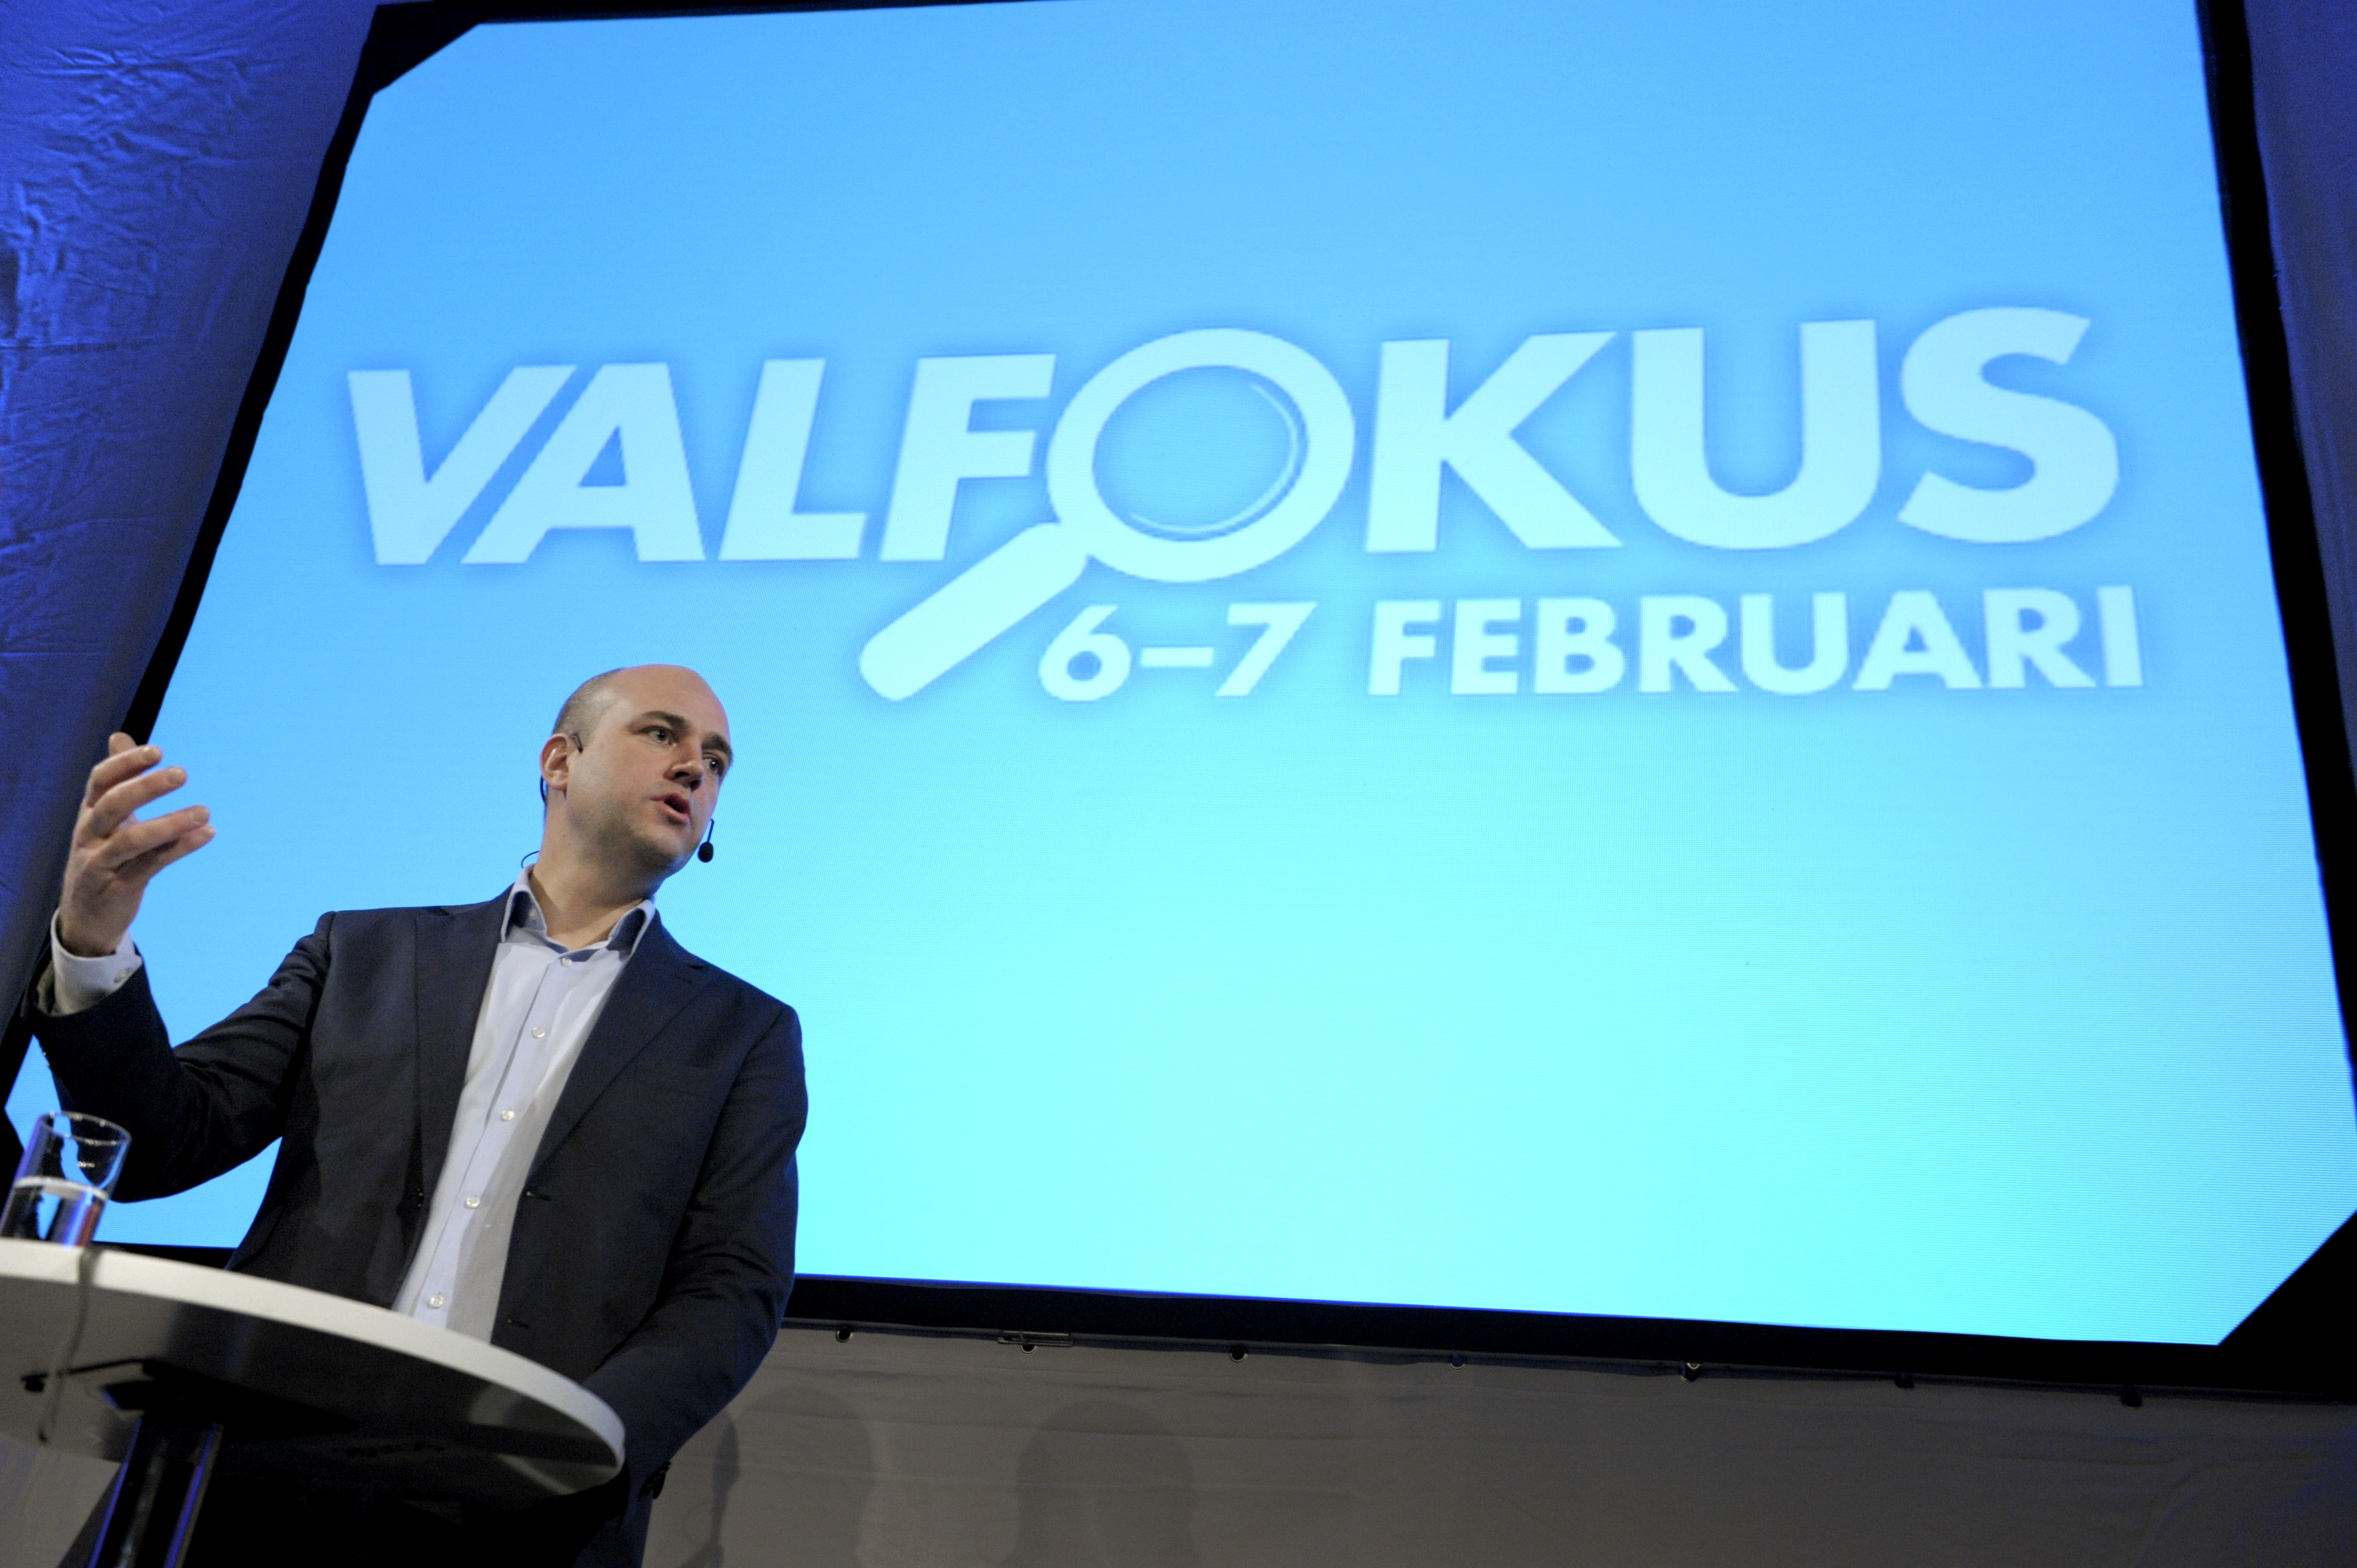 Alliansen, Riksdagsvalet 2010, Politik, Regeringen, Fredrik Reinfeldt